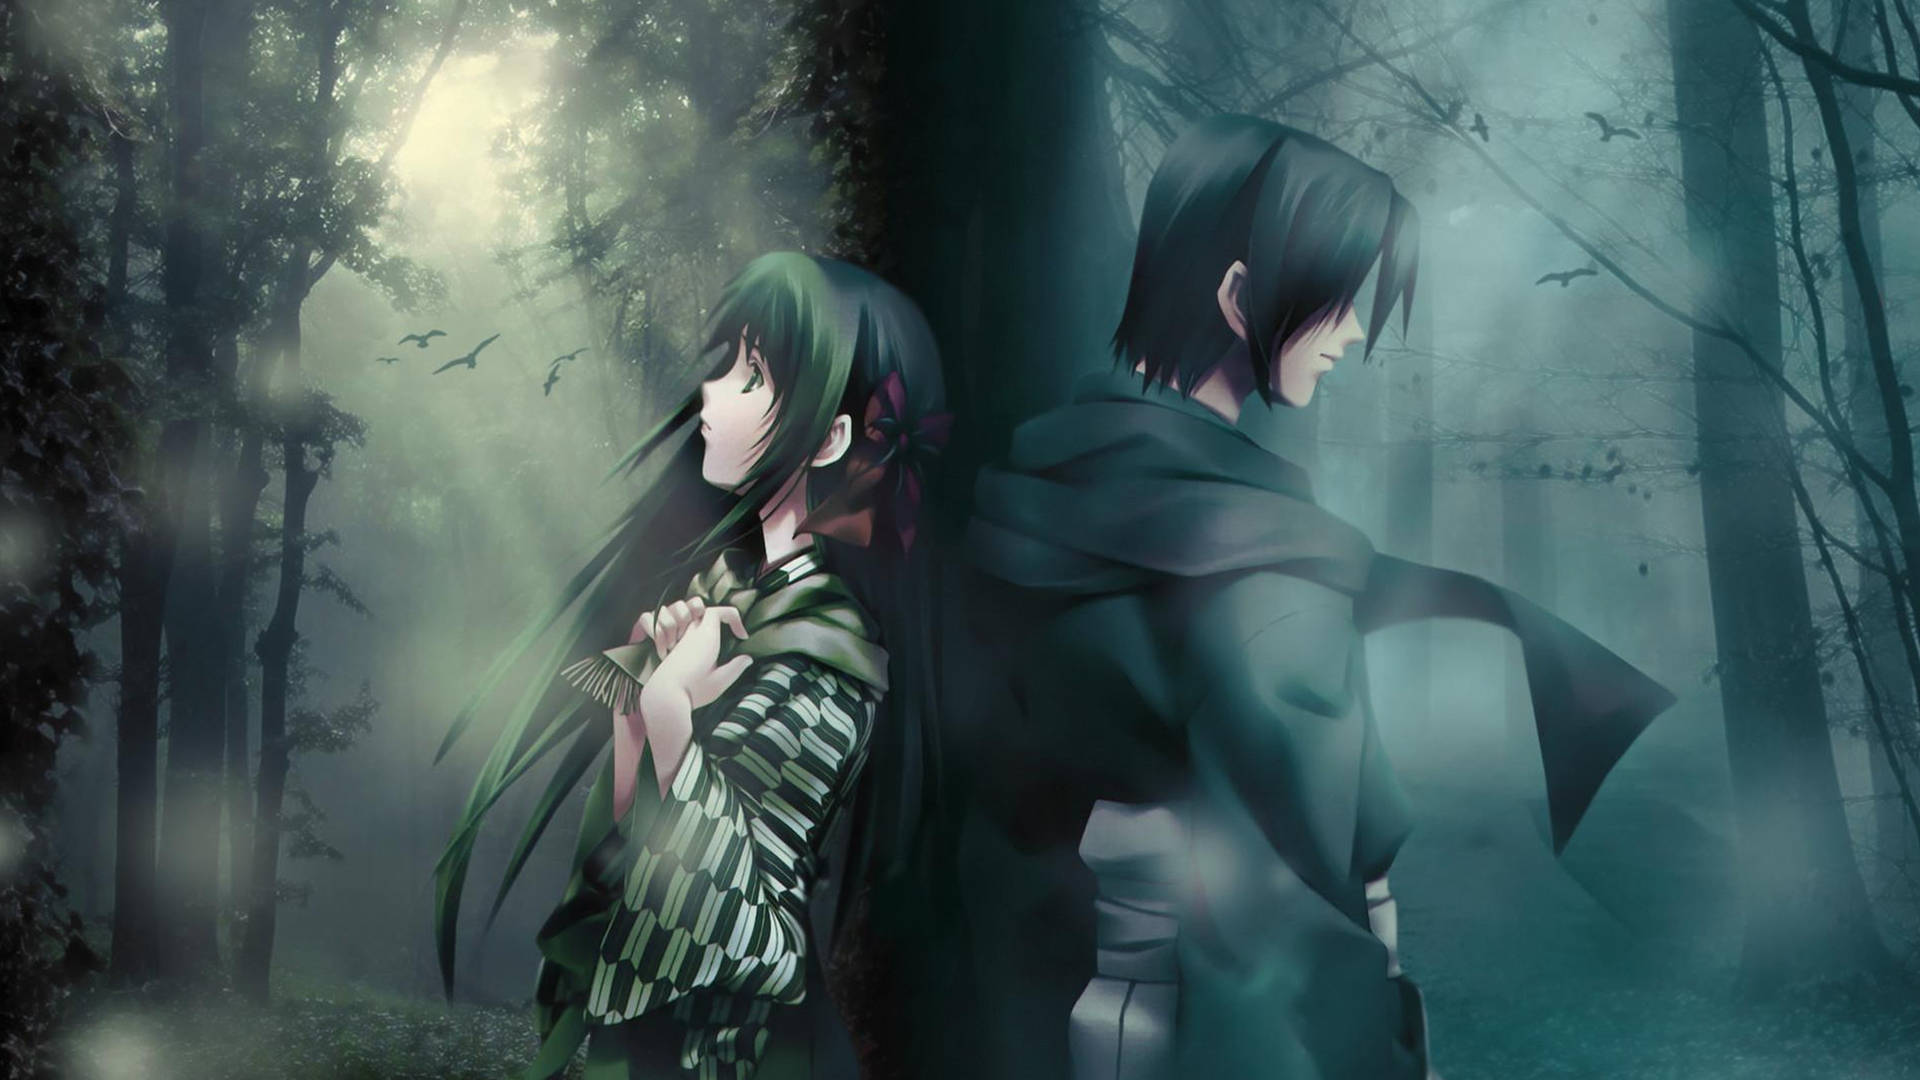 Sad Anime 4k Man And Woman Together Wallpaper